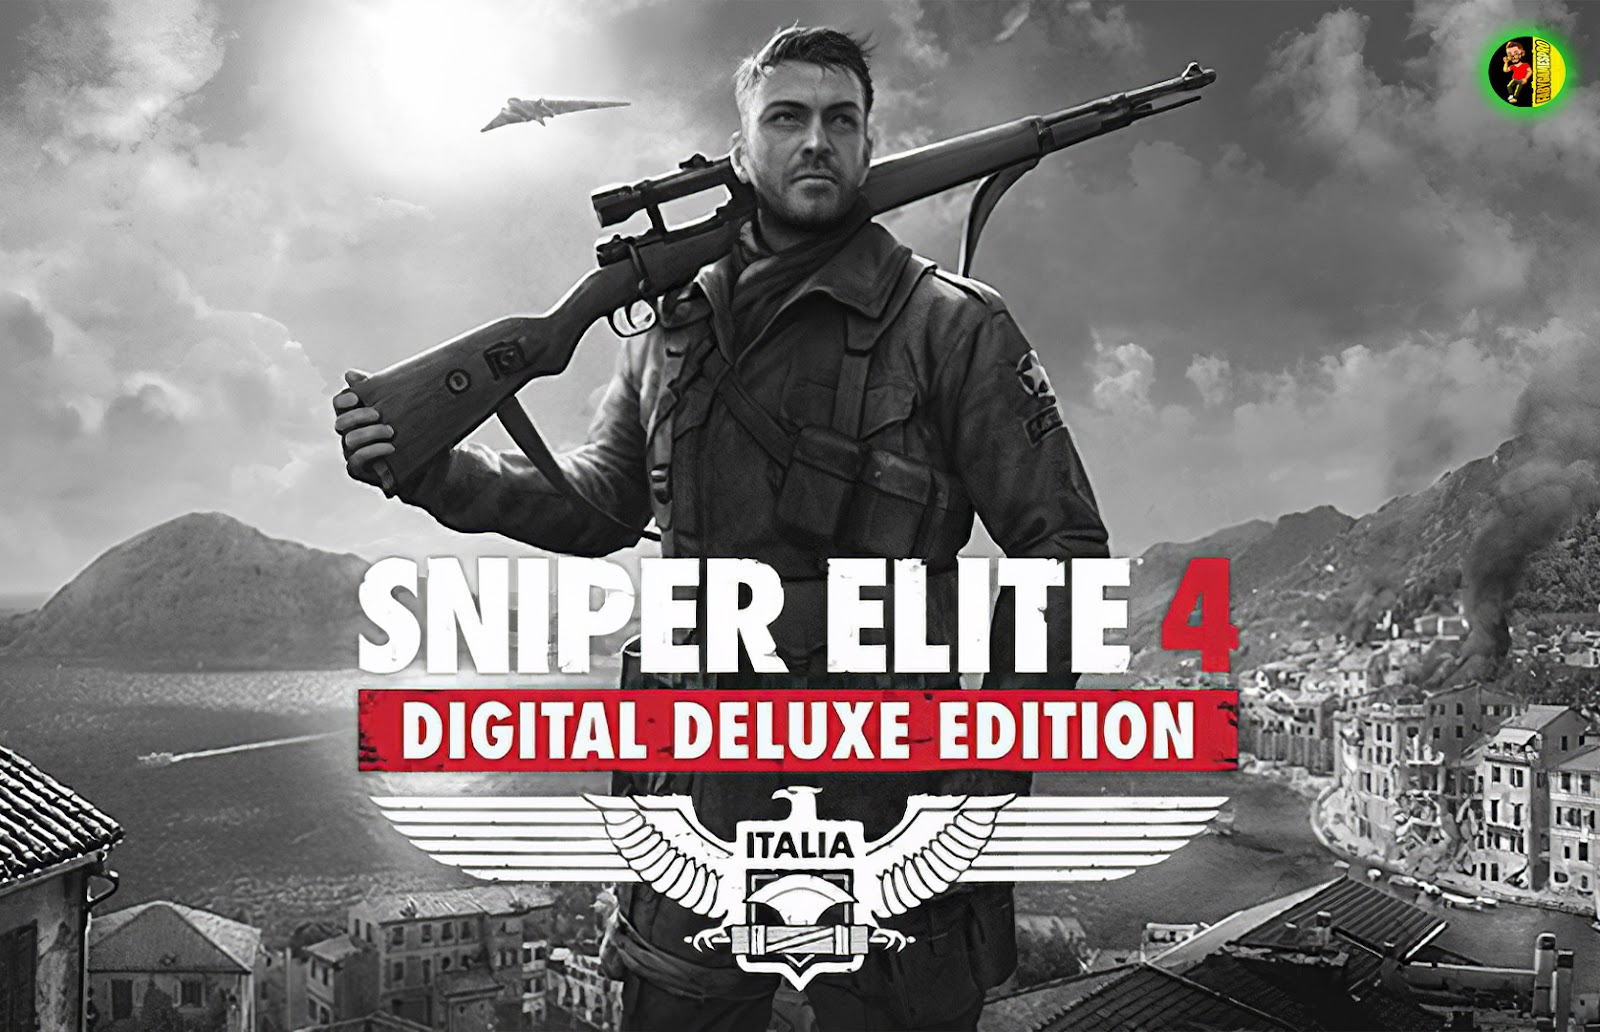 Sniper elite 4 deluxe edition